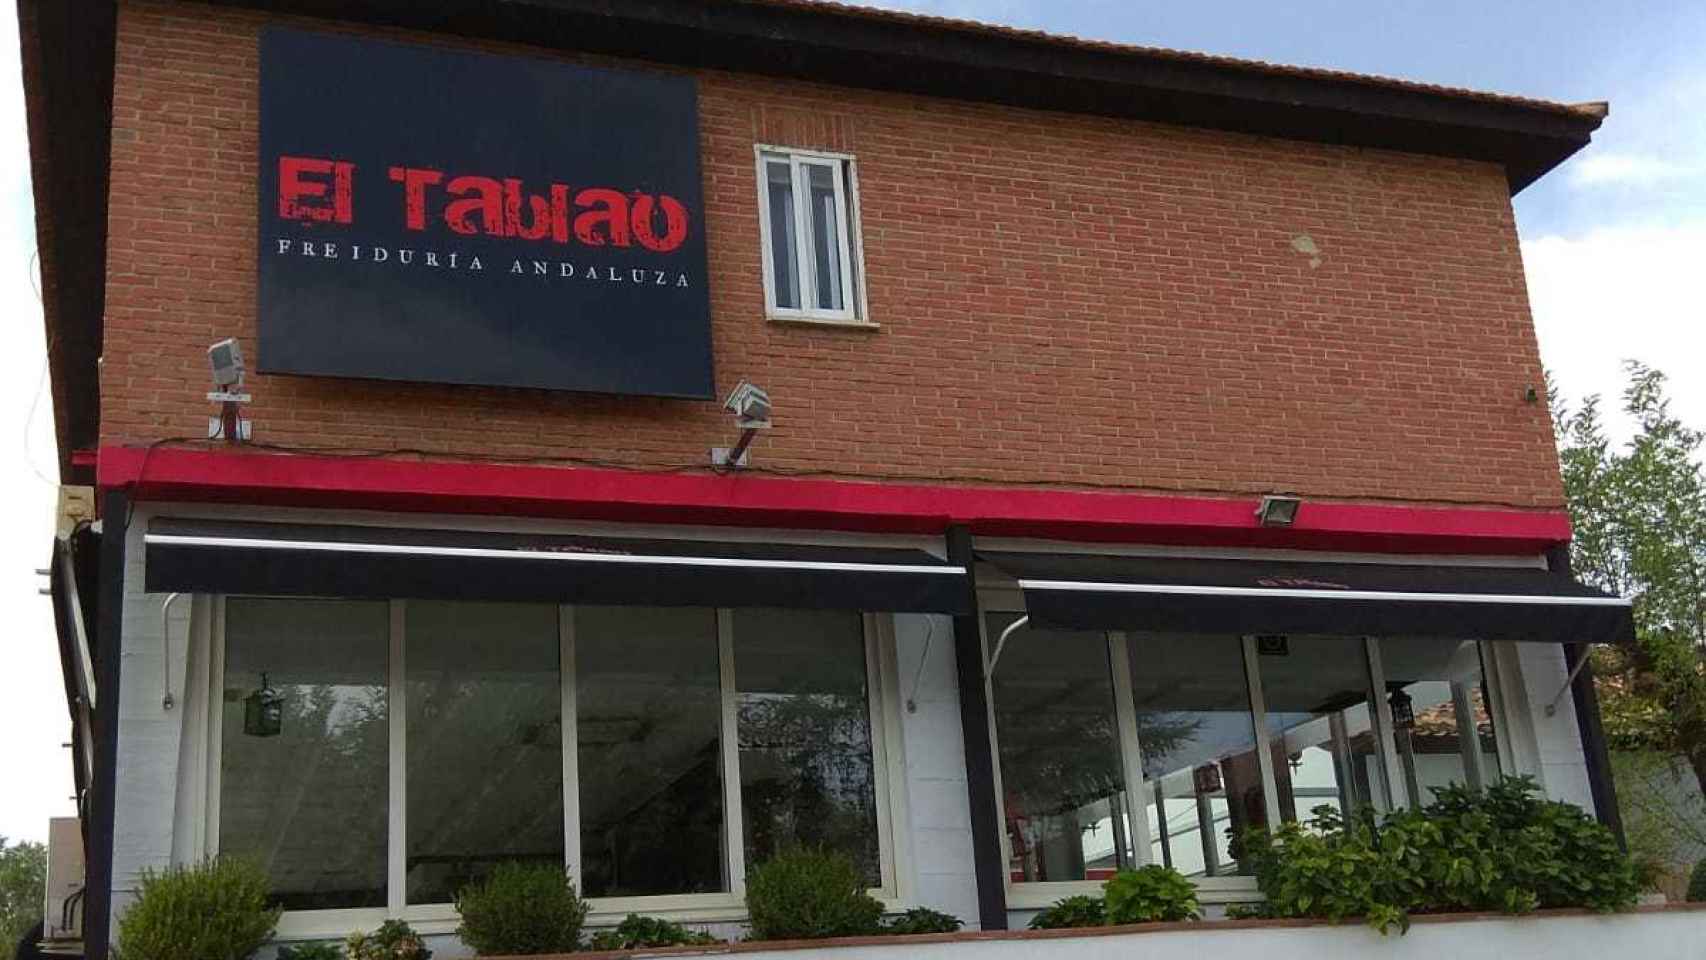 Freiduría El Tablao